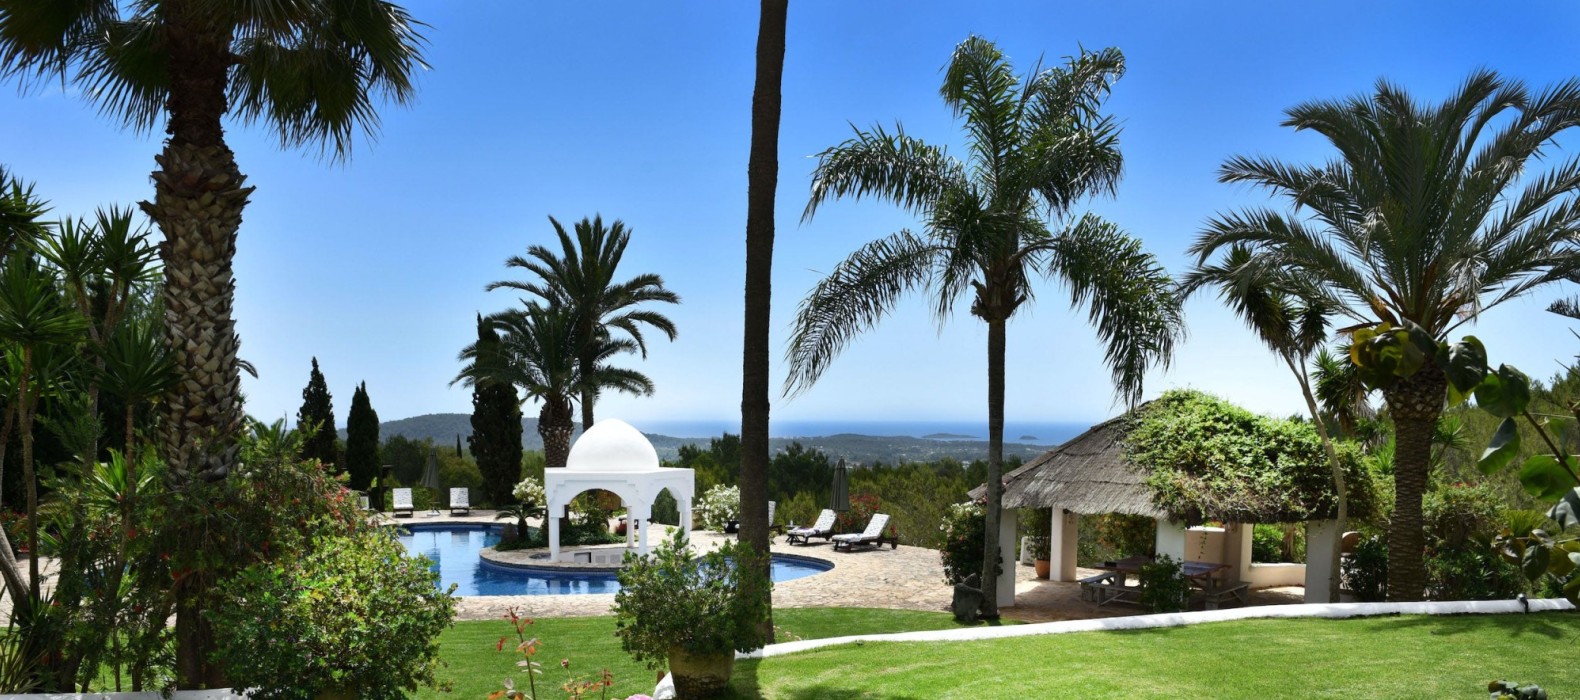 Garden view of Villa Parallel Life of Ibiza